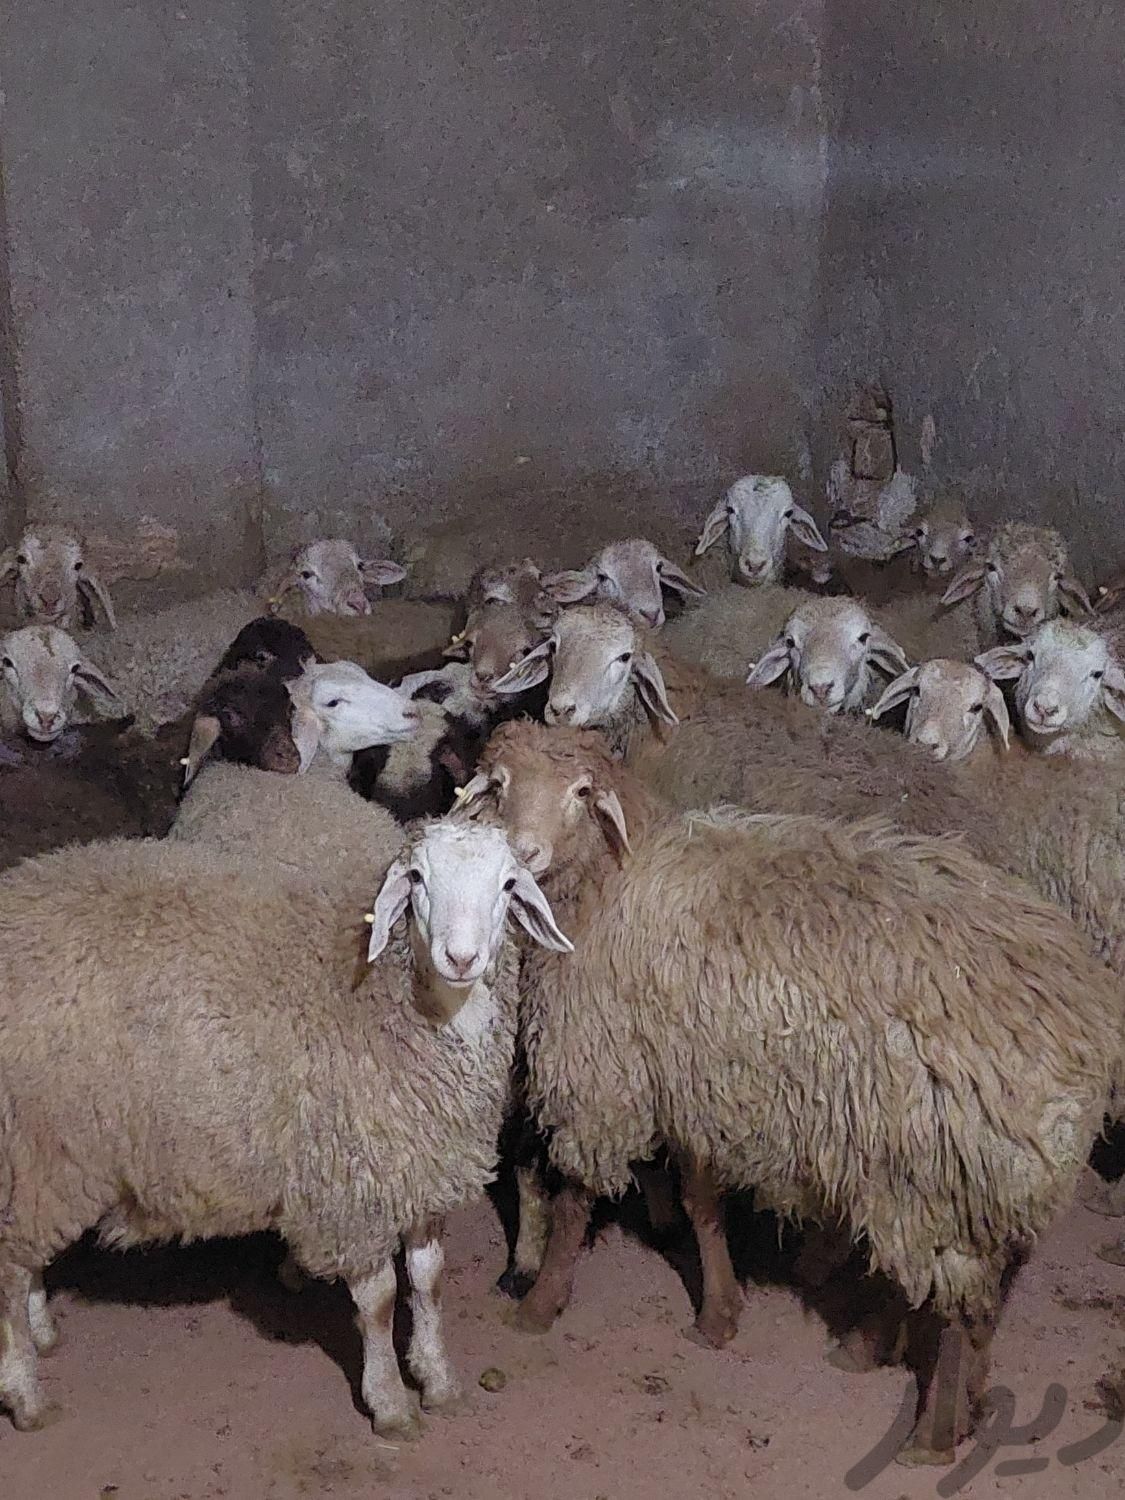 گوسفند پرواری کل کرج زنده|حیوانات مزرعه|کرج, ملارد|دیوار